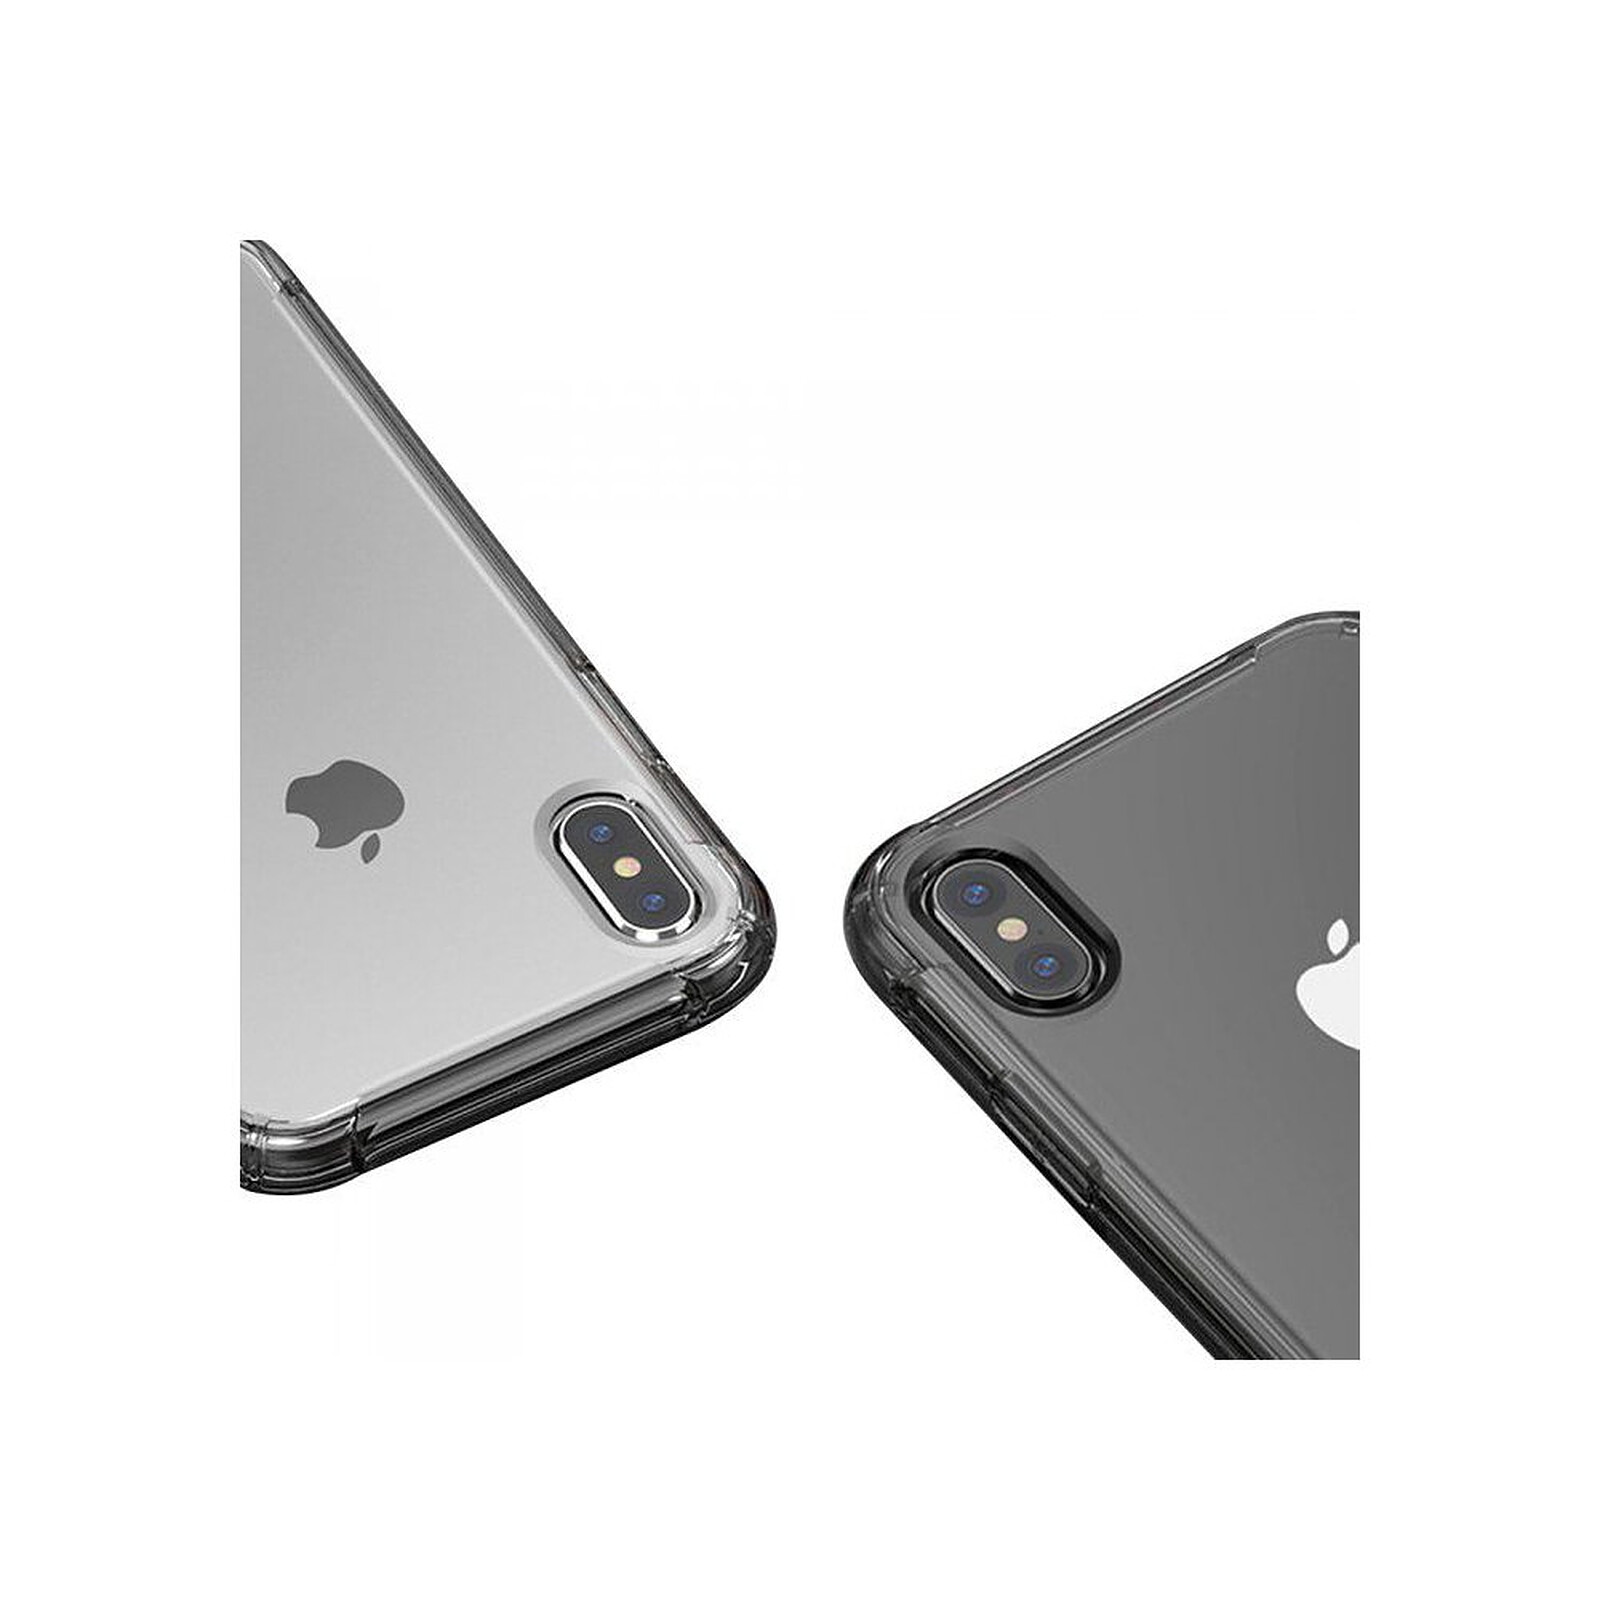 Coque aluminium et verre trempé pour iPhone XR